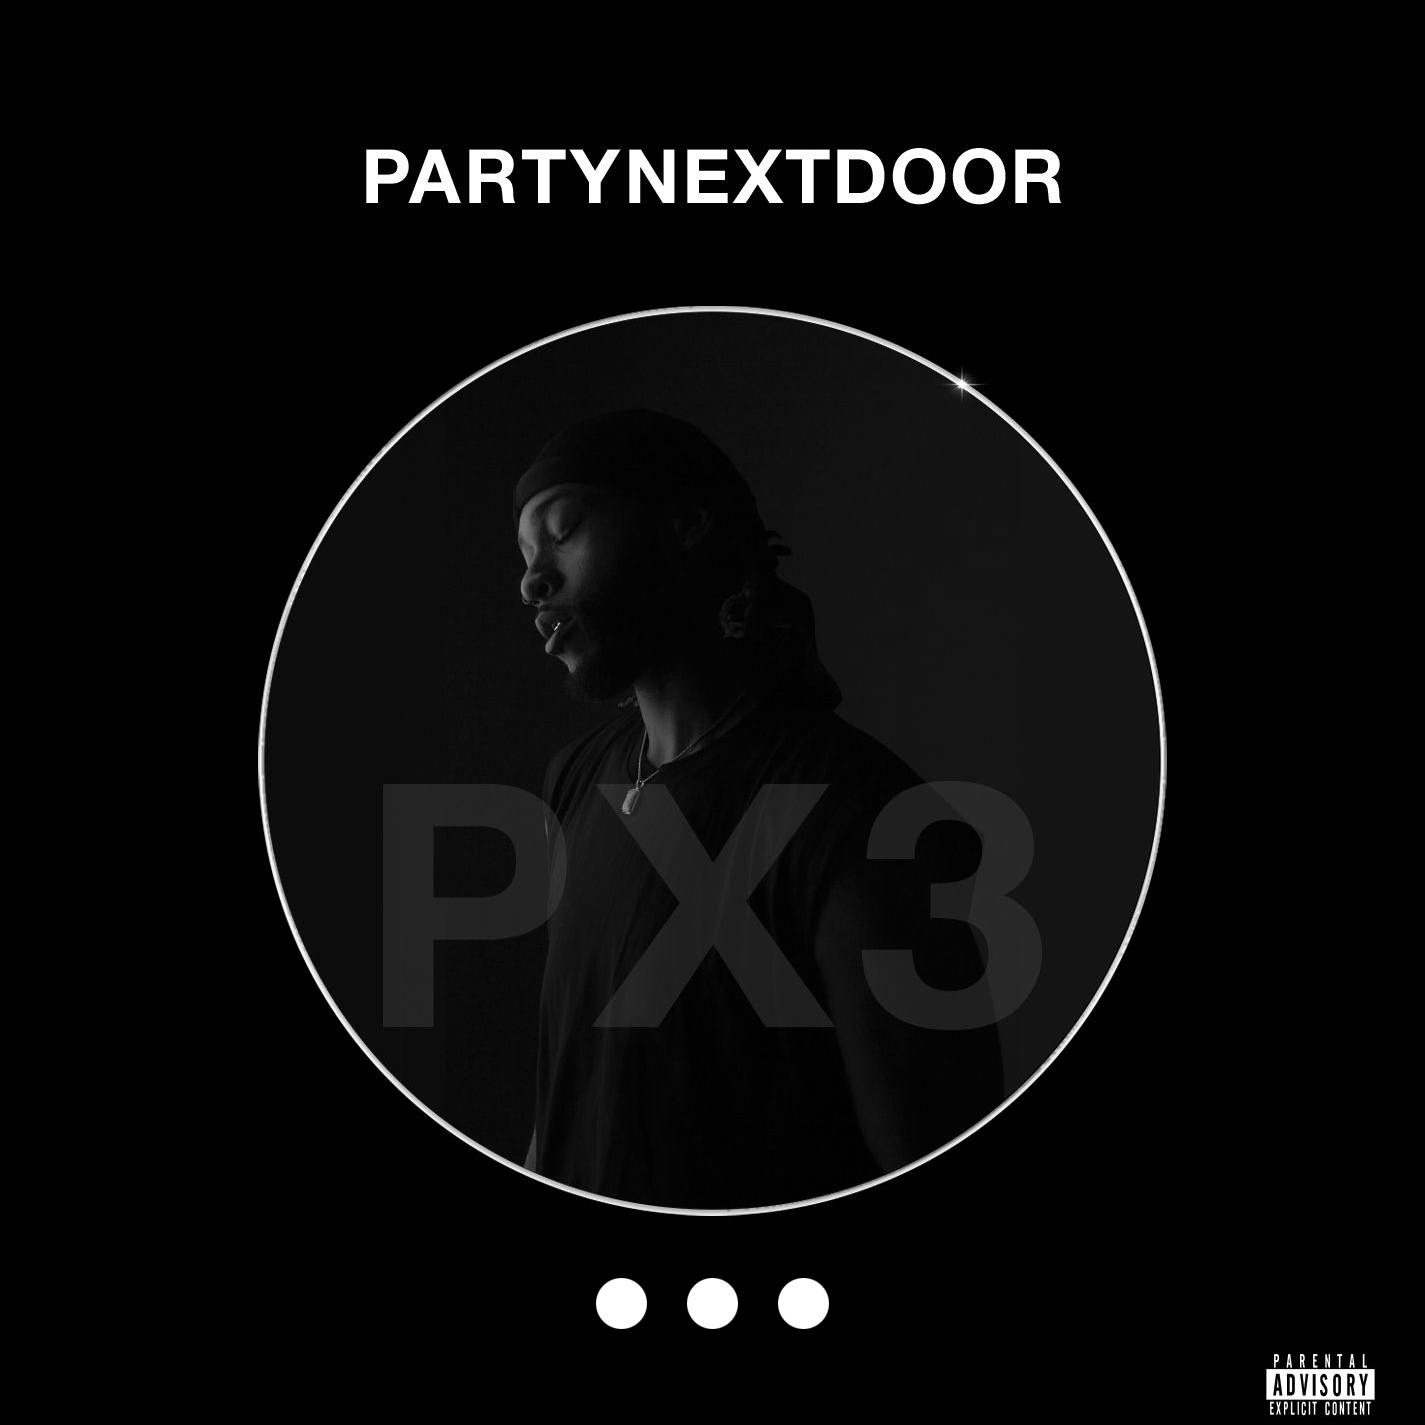 partynextdoor 2 album